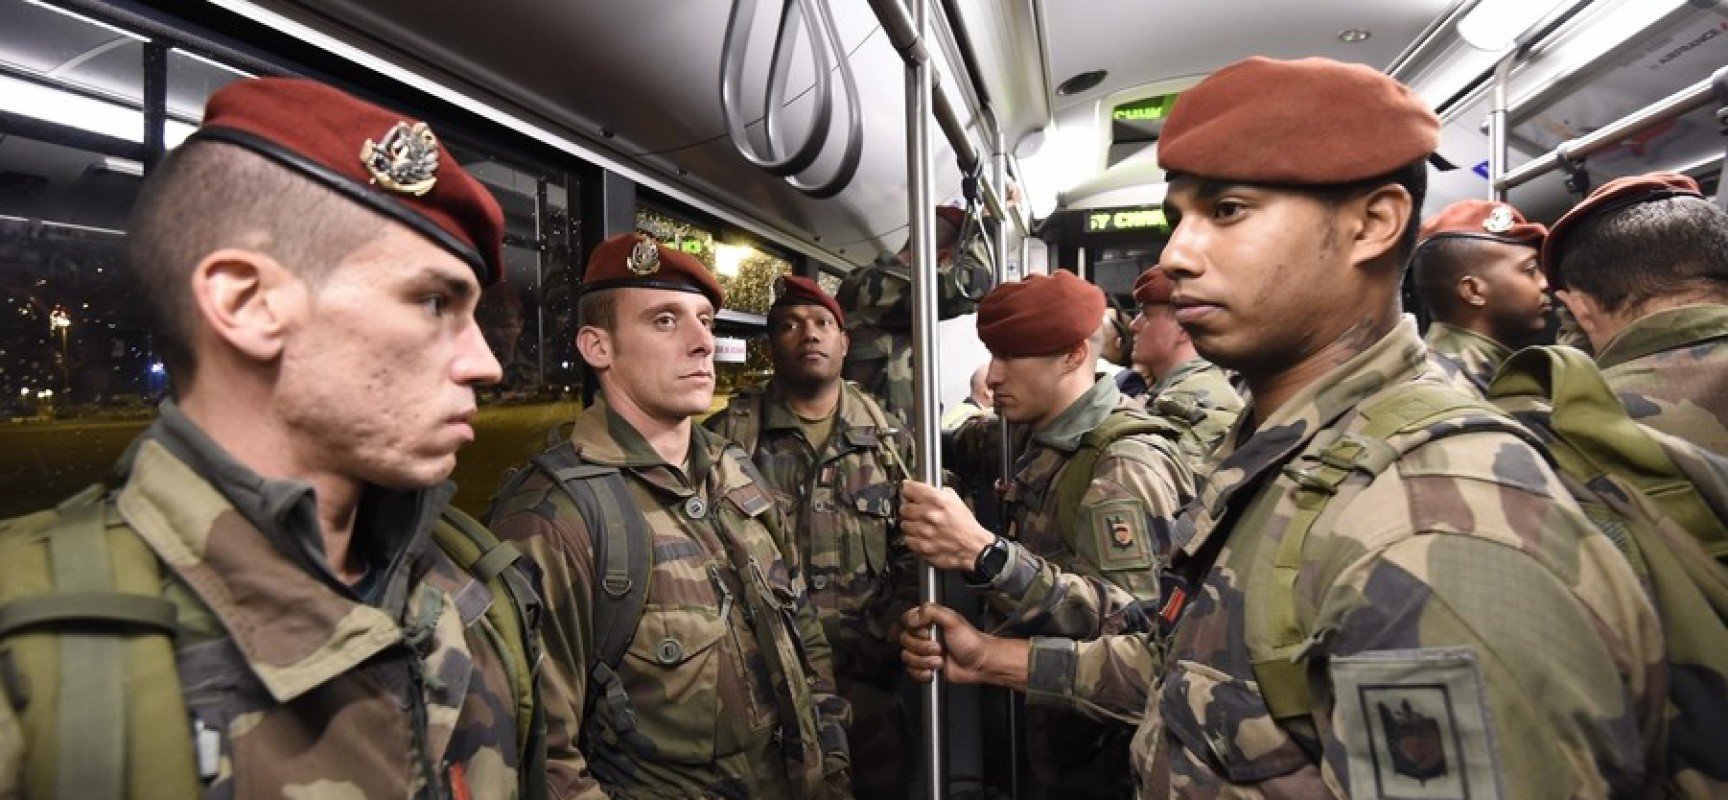 Militaires métro parisien